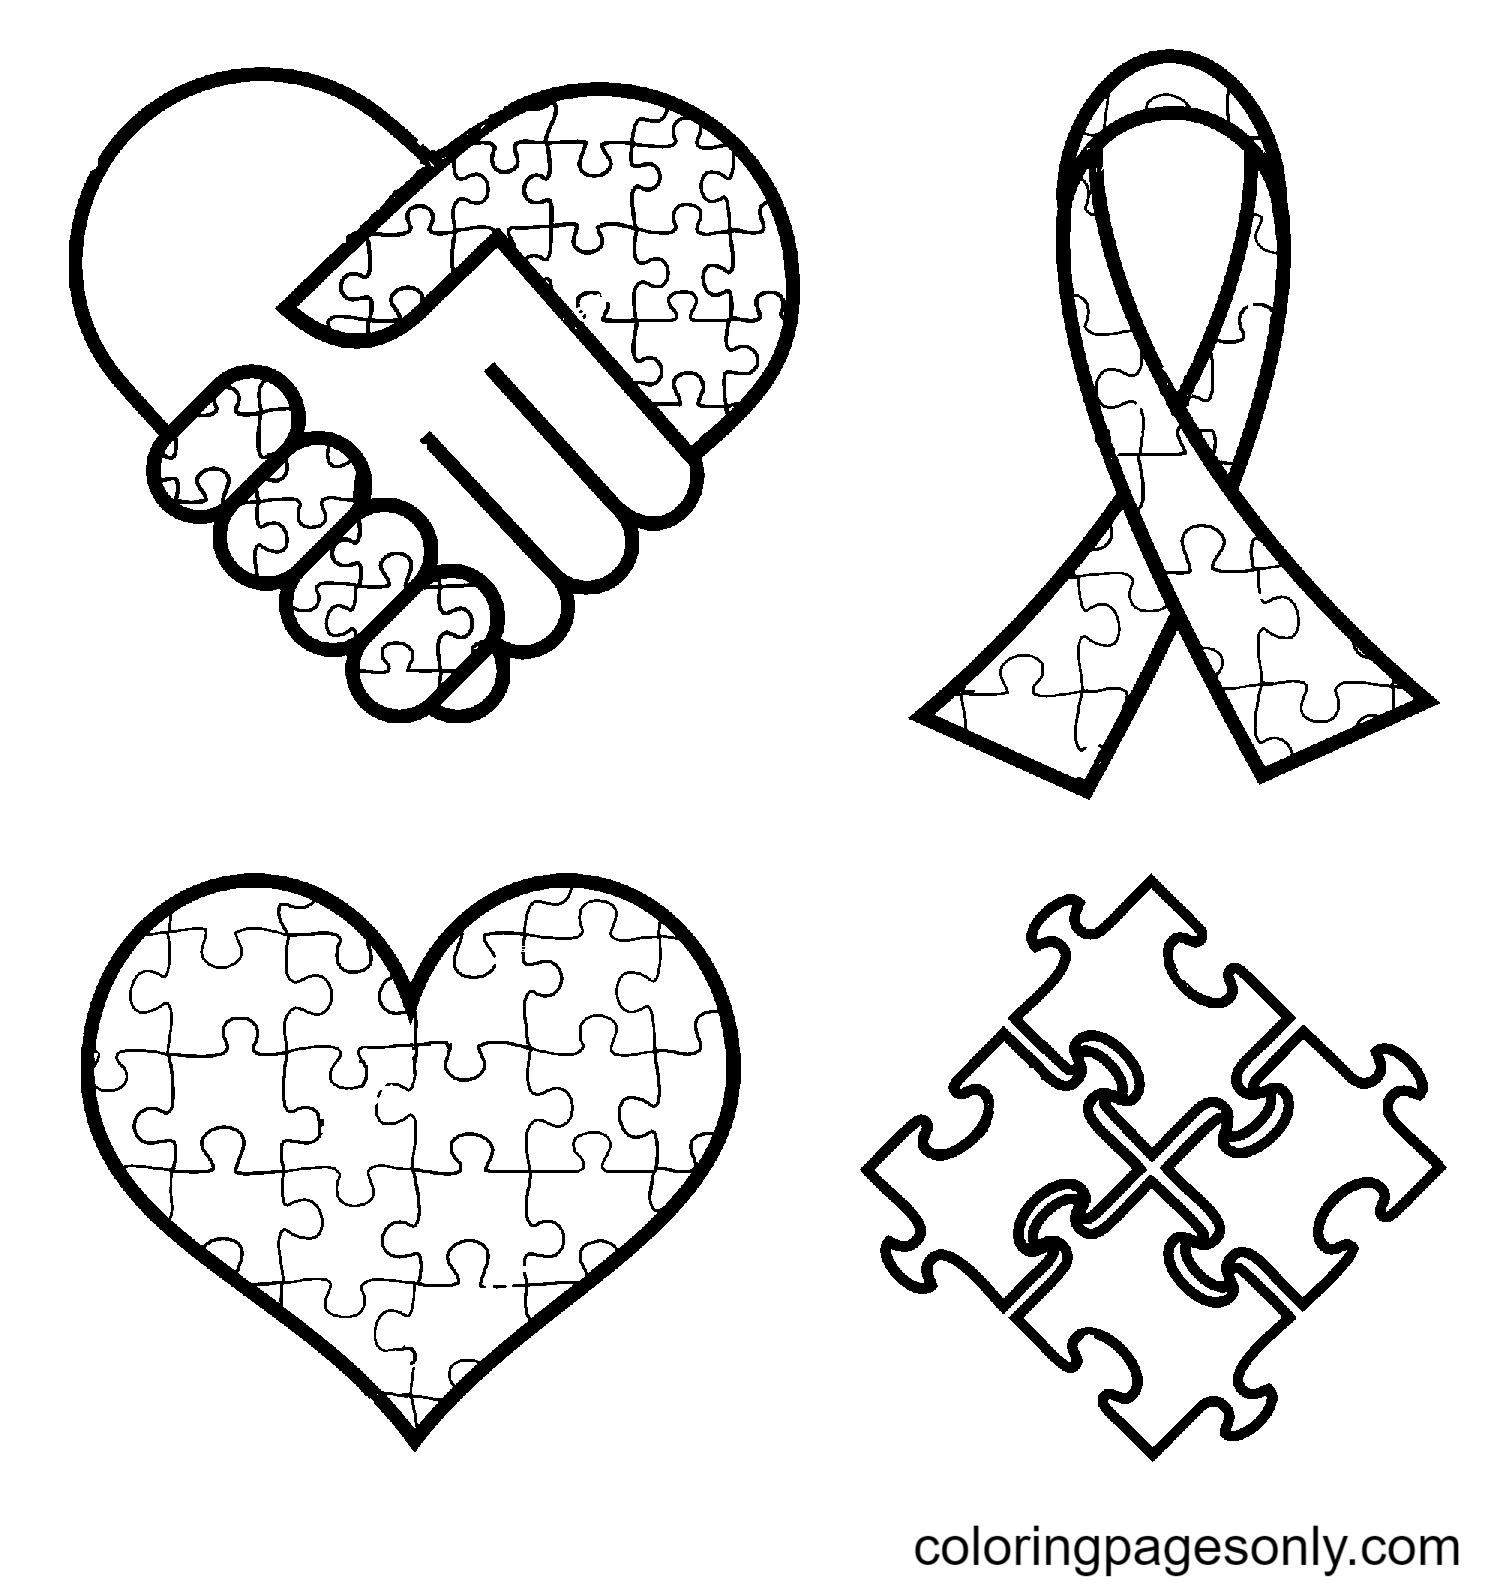 Autisme bewustzijn symbolen handen lint hart van Wereld Autisme bewustzijnsdag